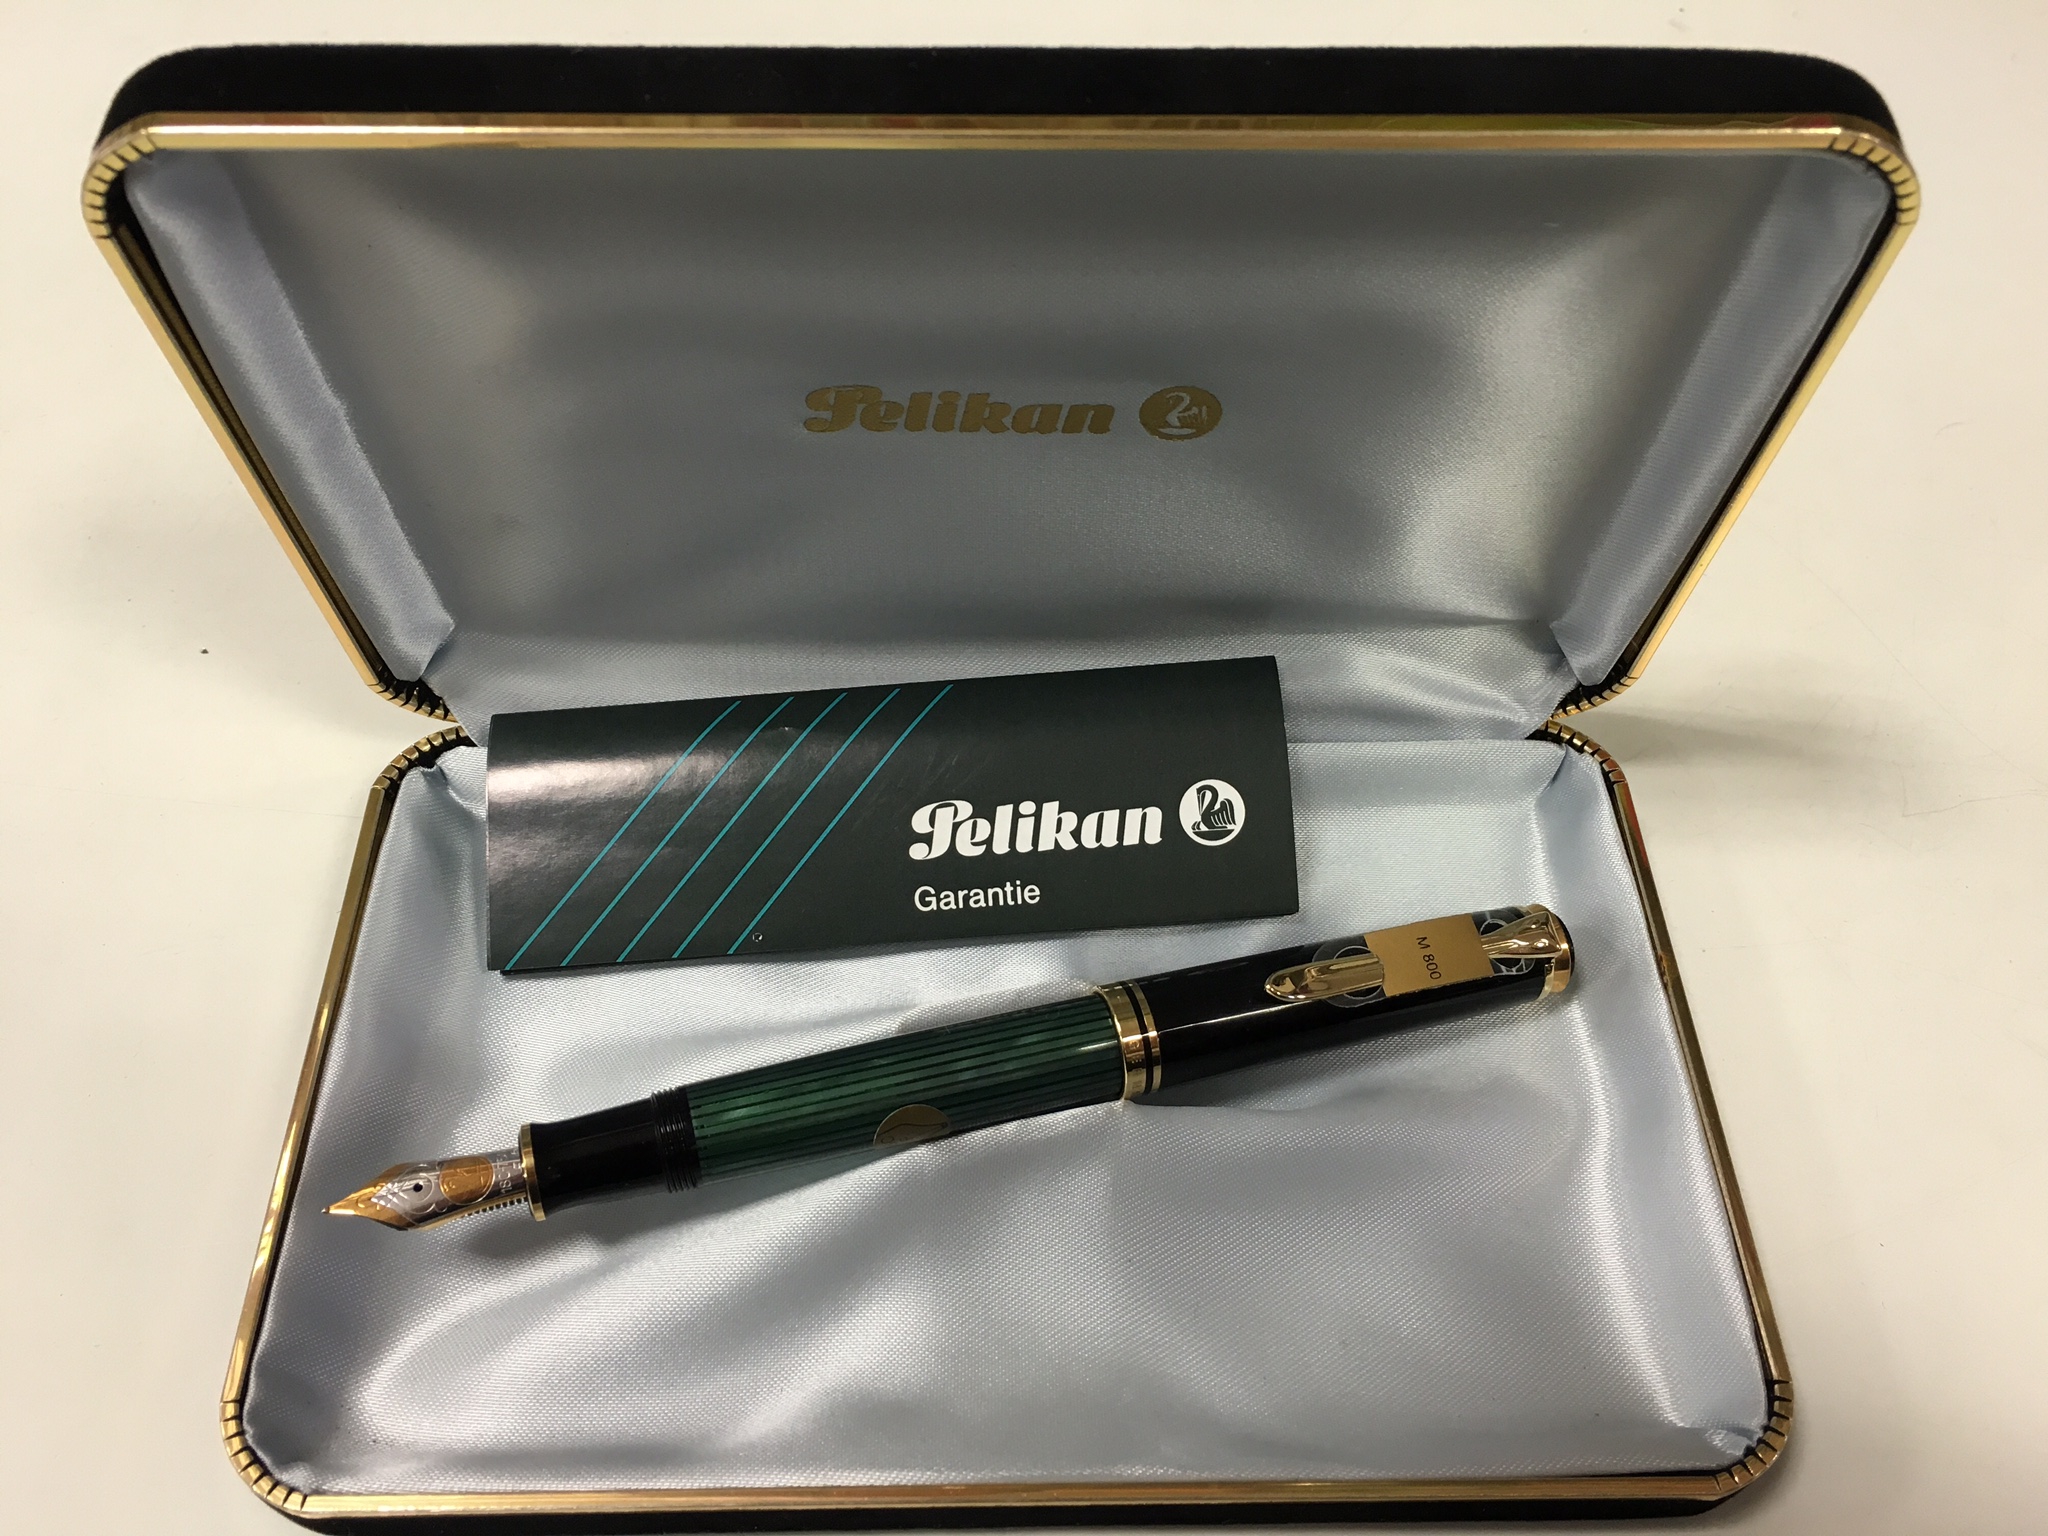 Pelikan M 805 Penna stilografica Souveraen 805 Stesemann pennino F in oro bianco rodiato